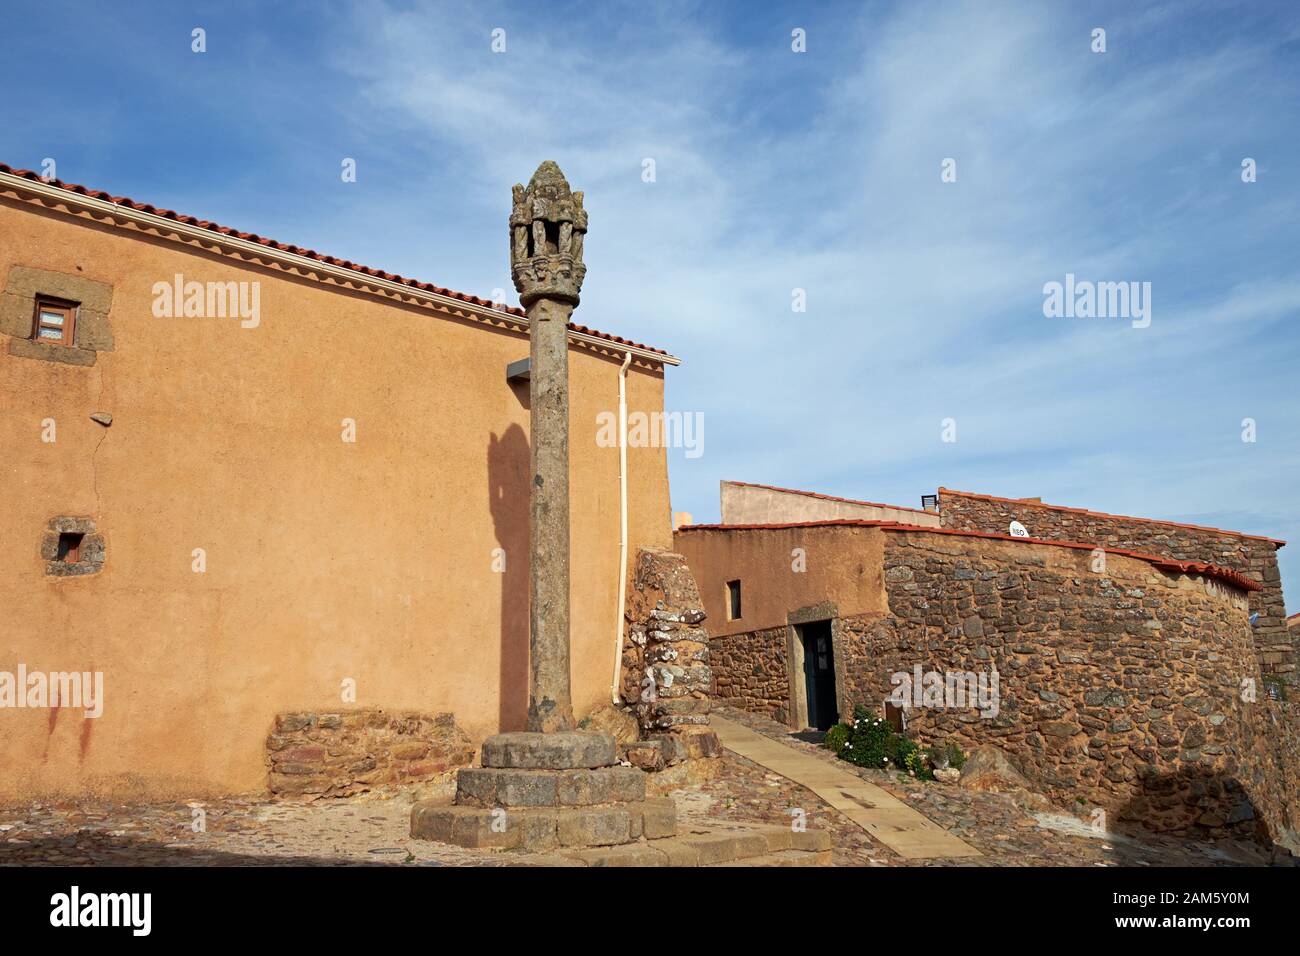 Der Pranger im manuelinischen Stil aus dem 16. Jahrhundert im mittelalterlichen Dorf Castelo Rodrigo, Portugal. Stockfoto